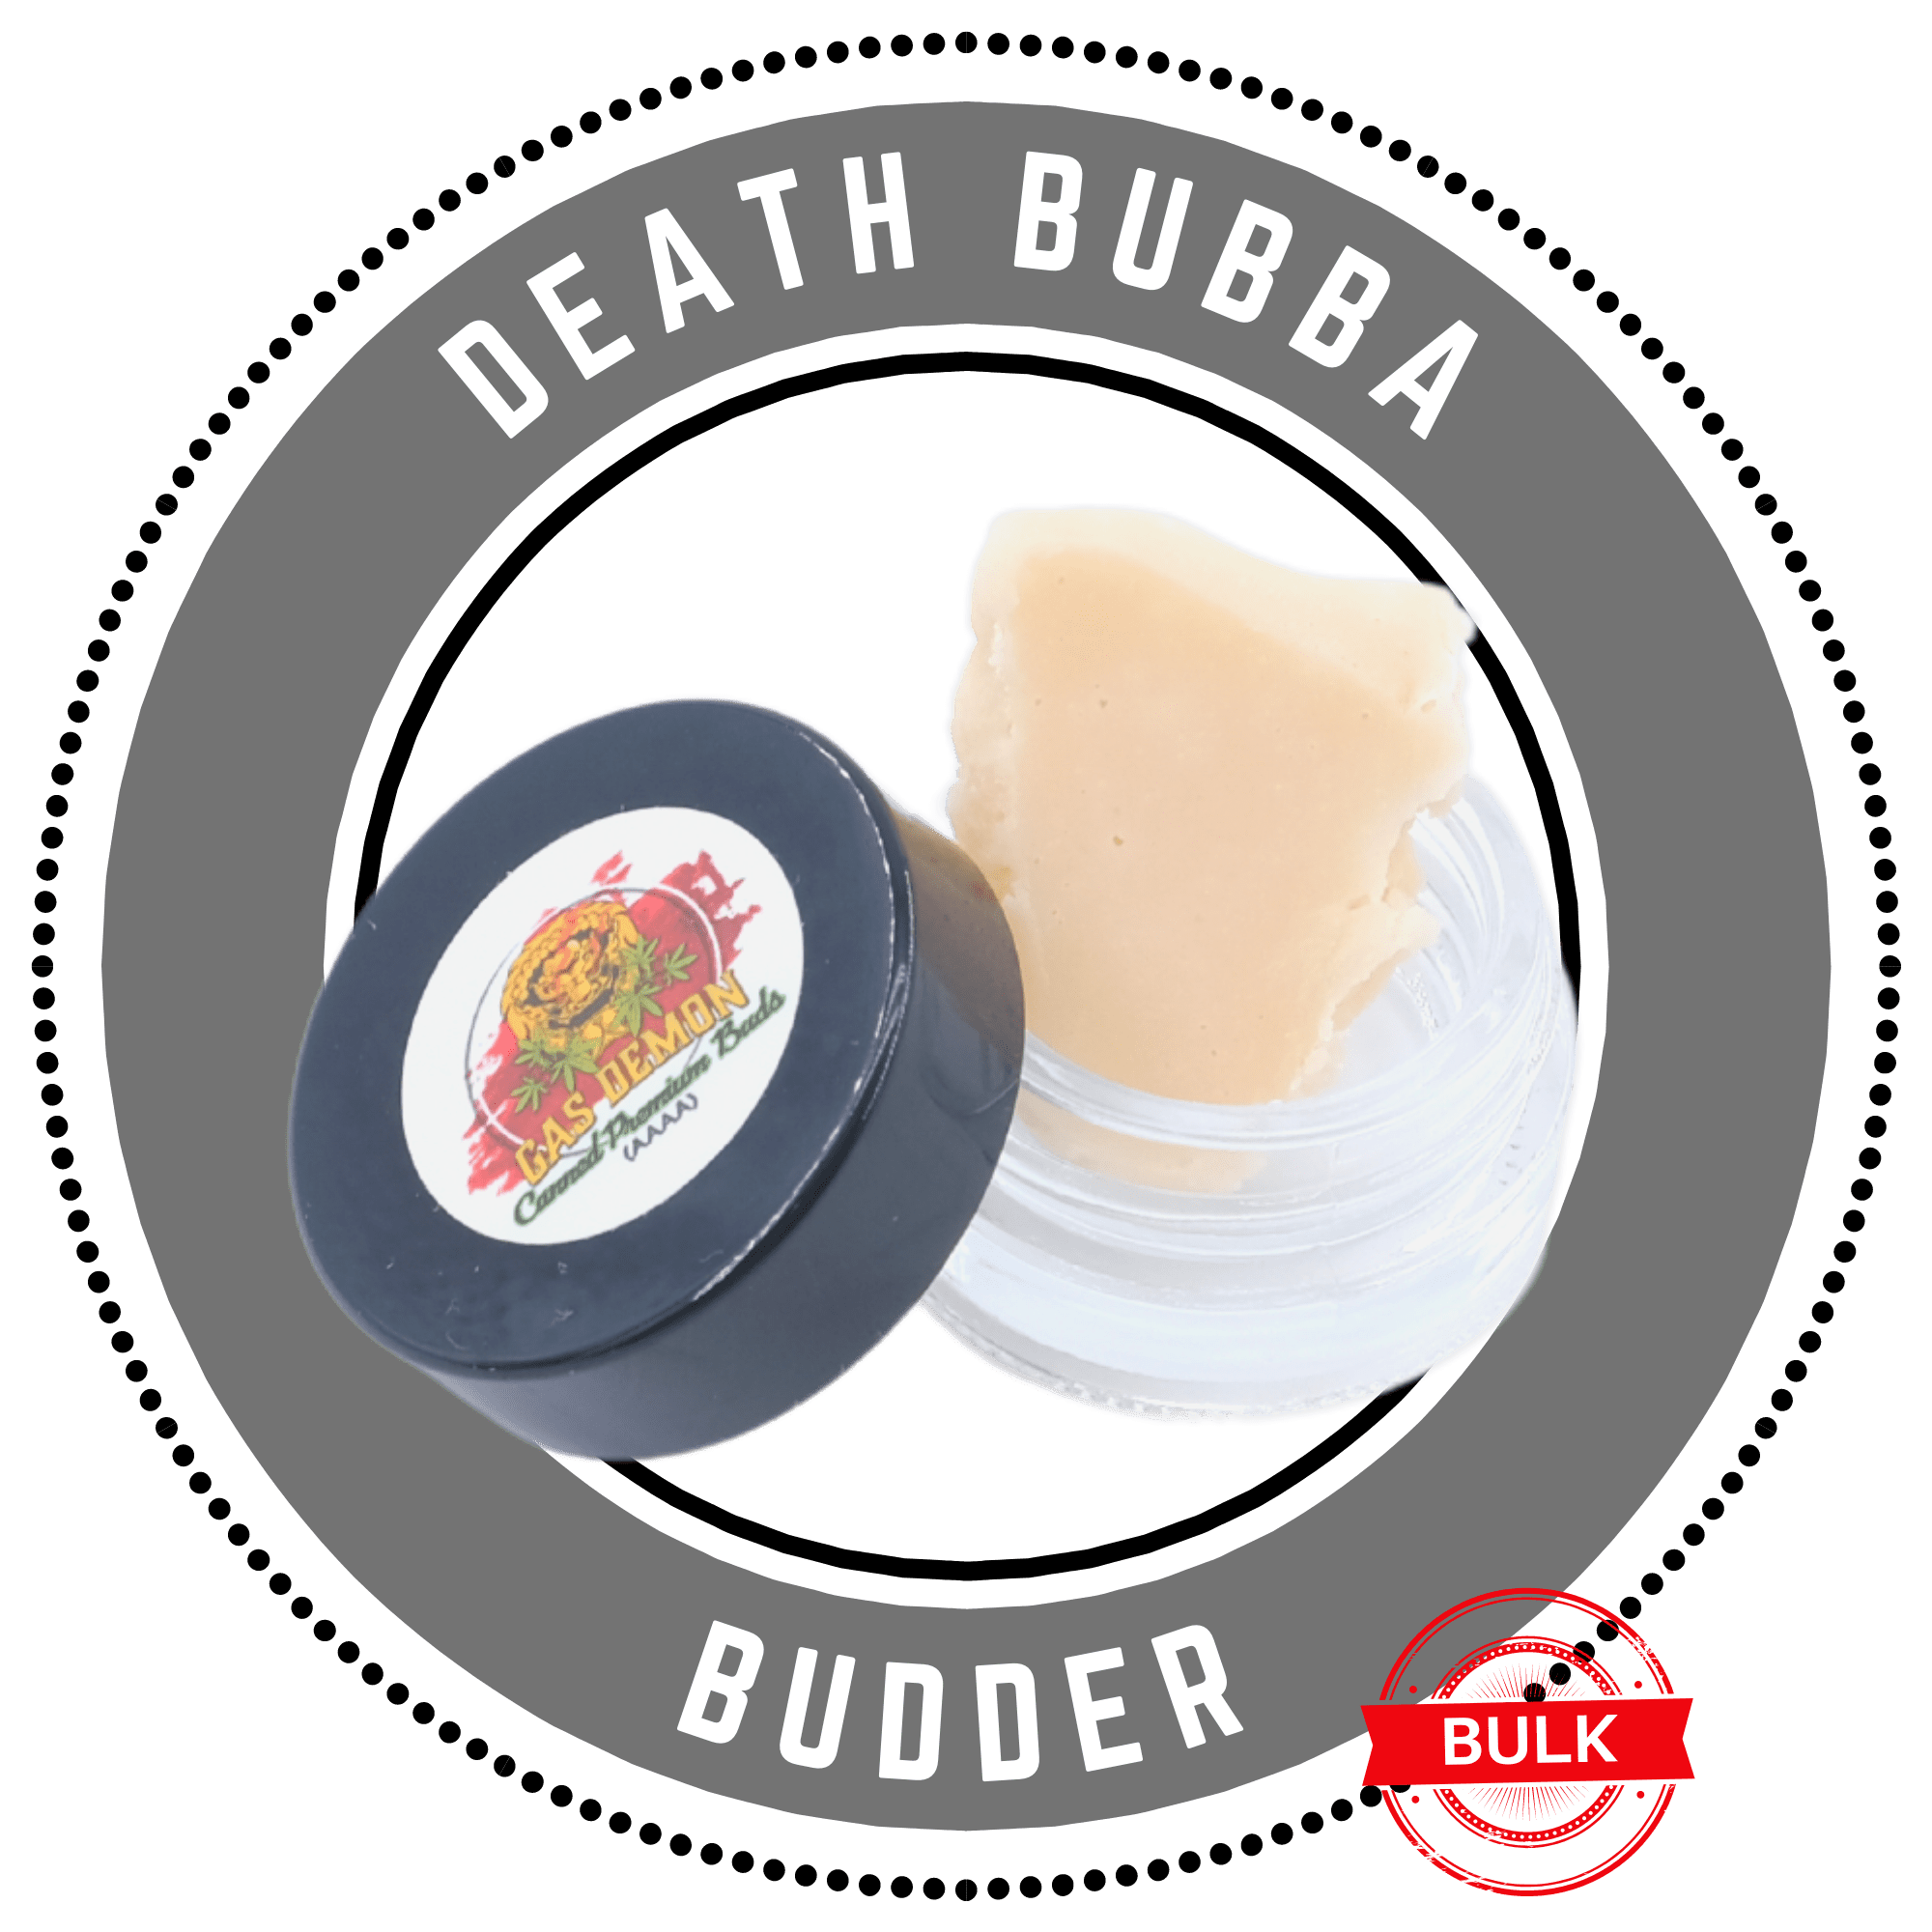 deathbubba budder bulk